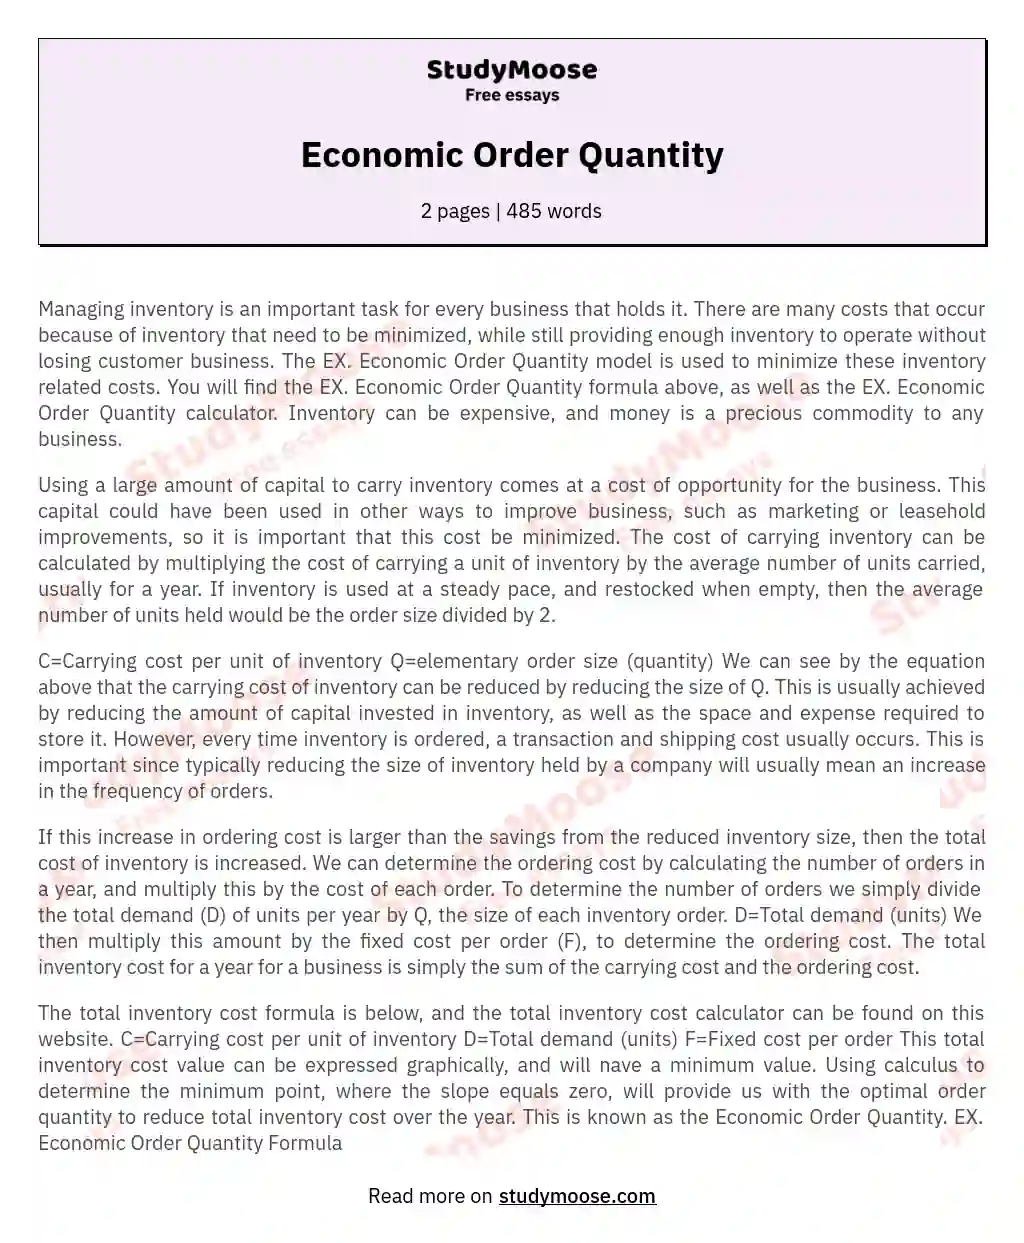 Economic Order Quantity essay